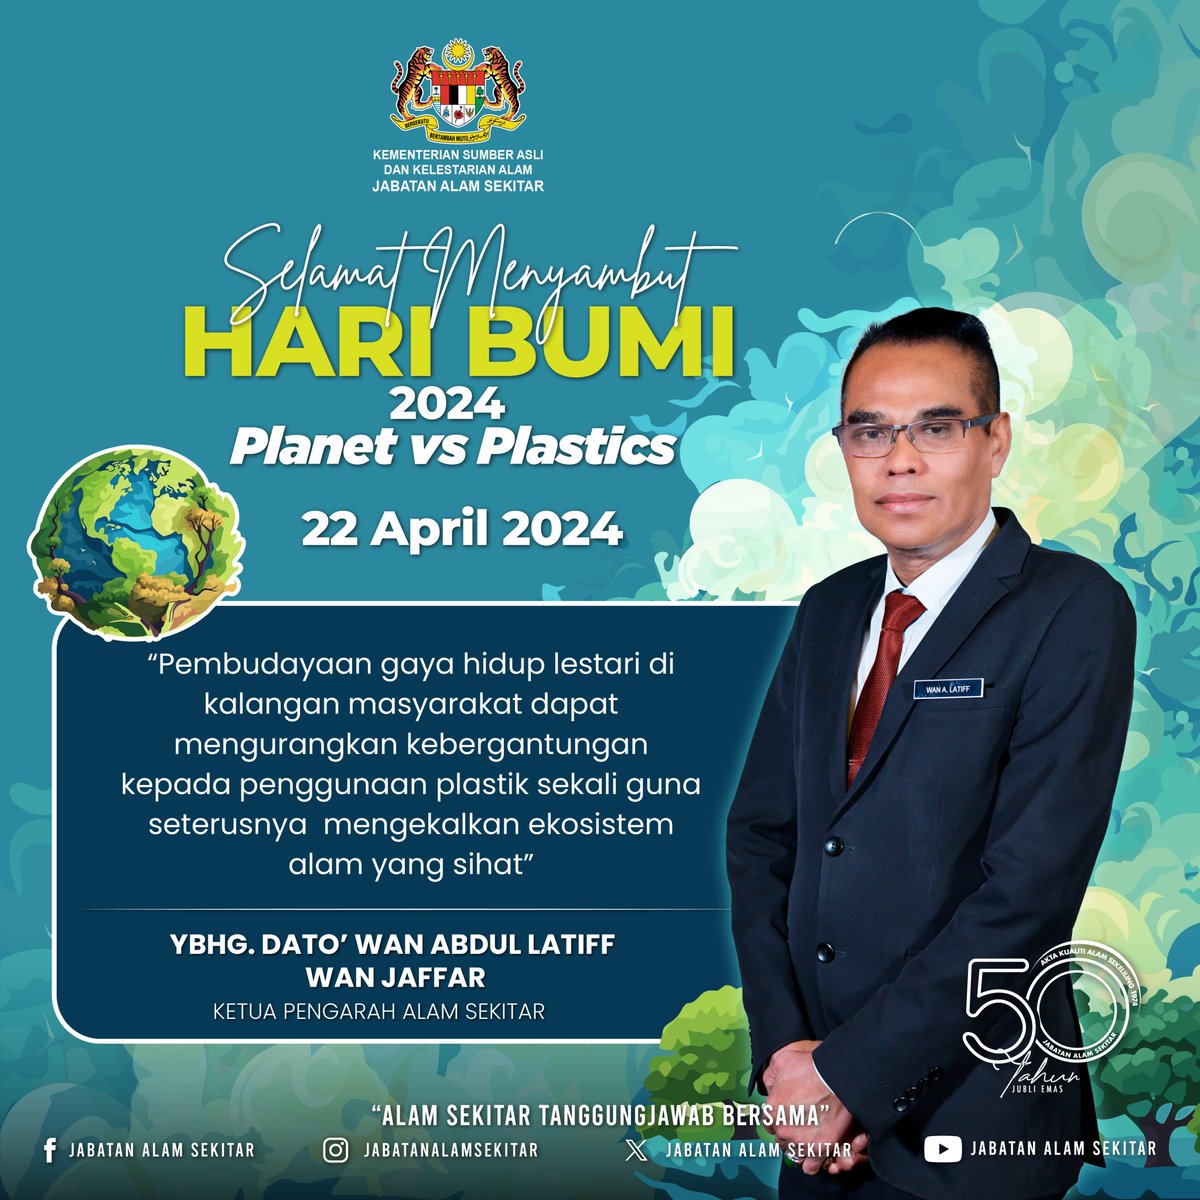 Selamat Menyambut Hari Bumi 2024 - Planet Vs. Plastics Dato' Wan Abdul Latiff bin Wan Jaffar Ketua Pengarah Alam Sekitar Malaysia